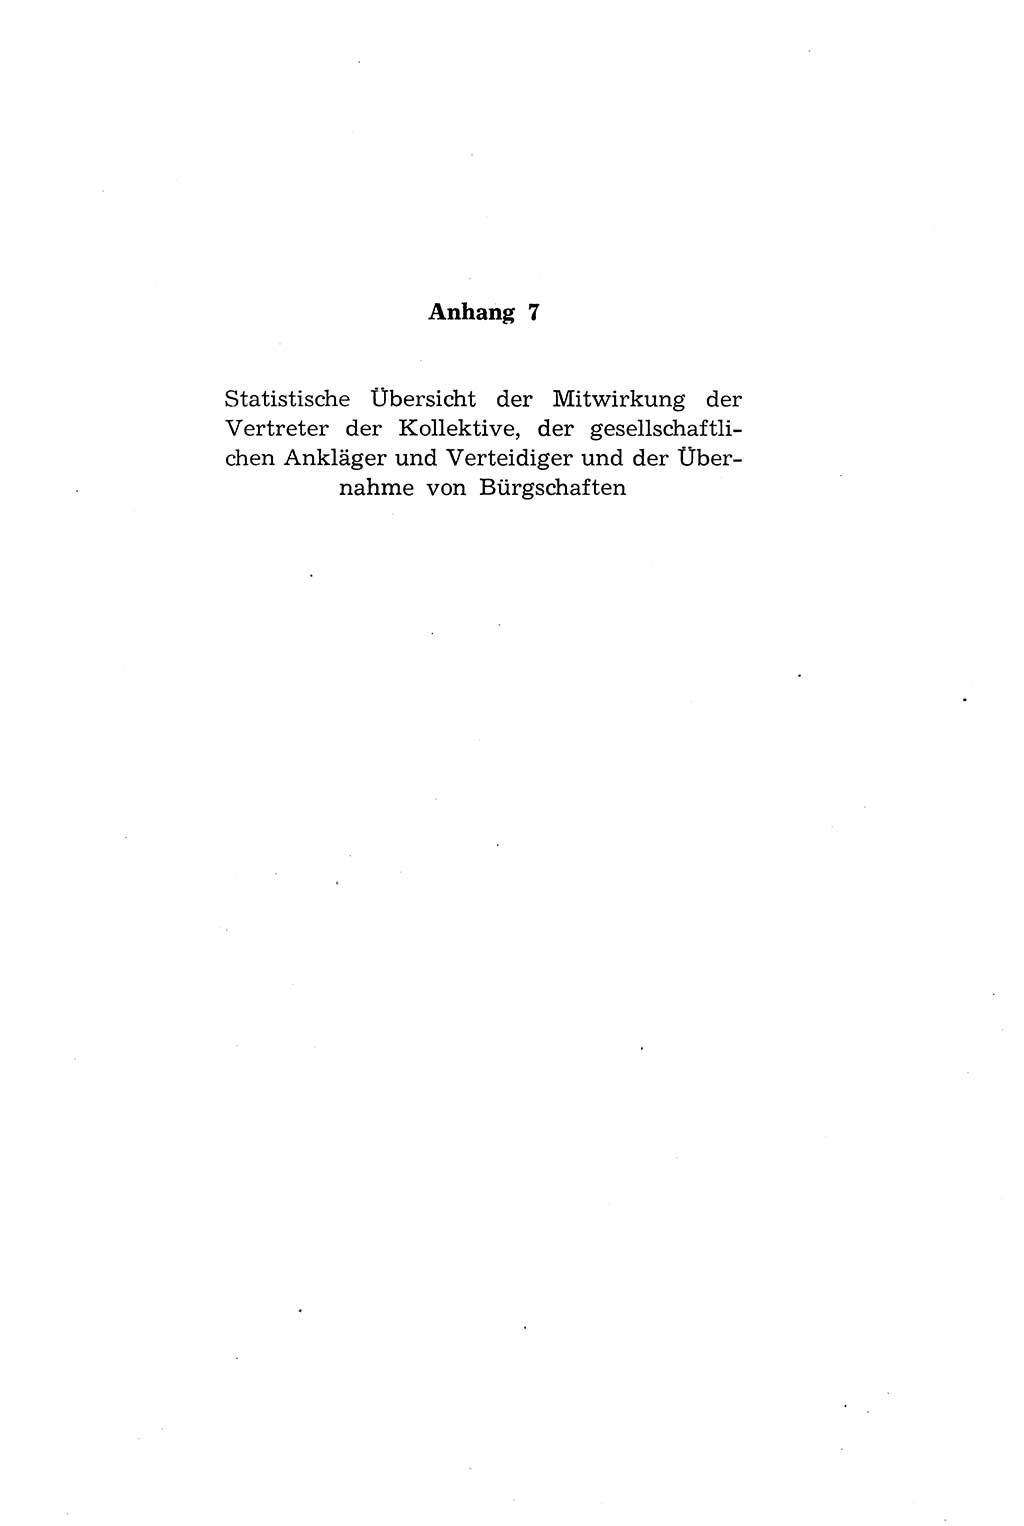 Die Mitwirkung der Werktätigen am Strafverfahren [Deutsche Demokratische Republik (DDR)] 1966, Seite 205 (Mitw. Str.-Verf. DDR 1966, S. 205)